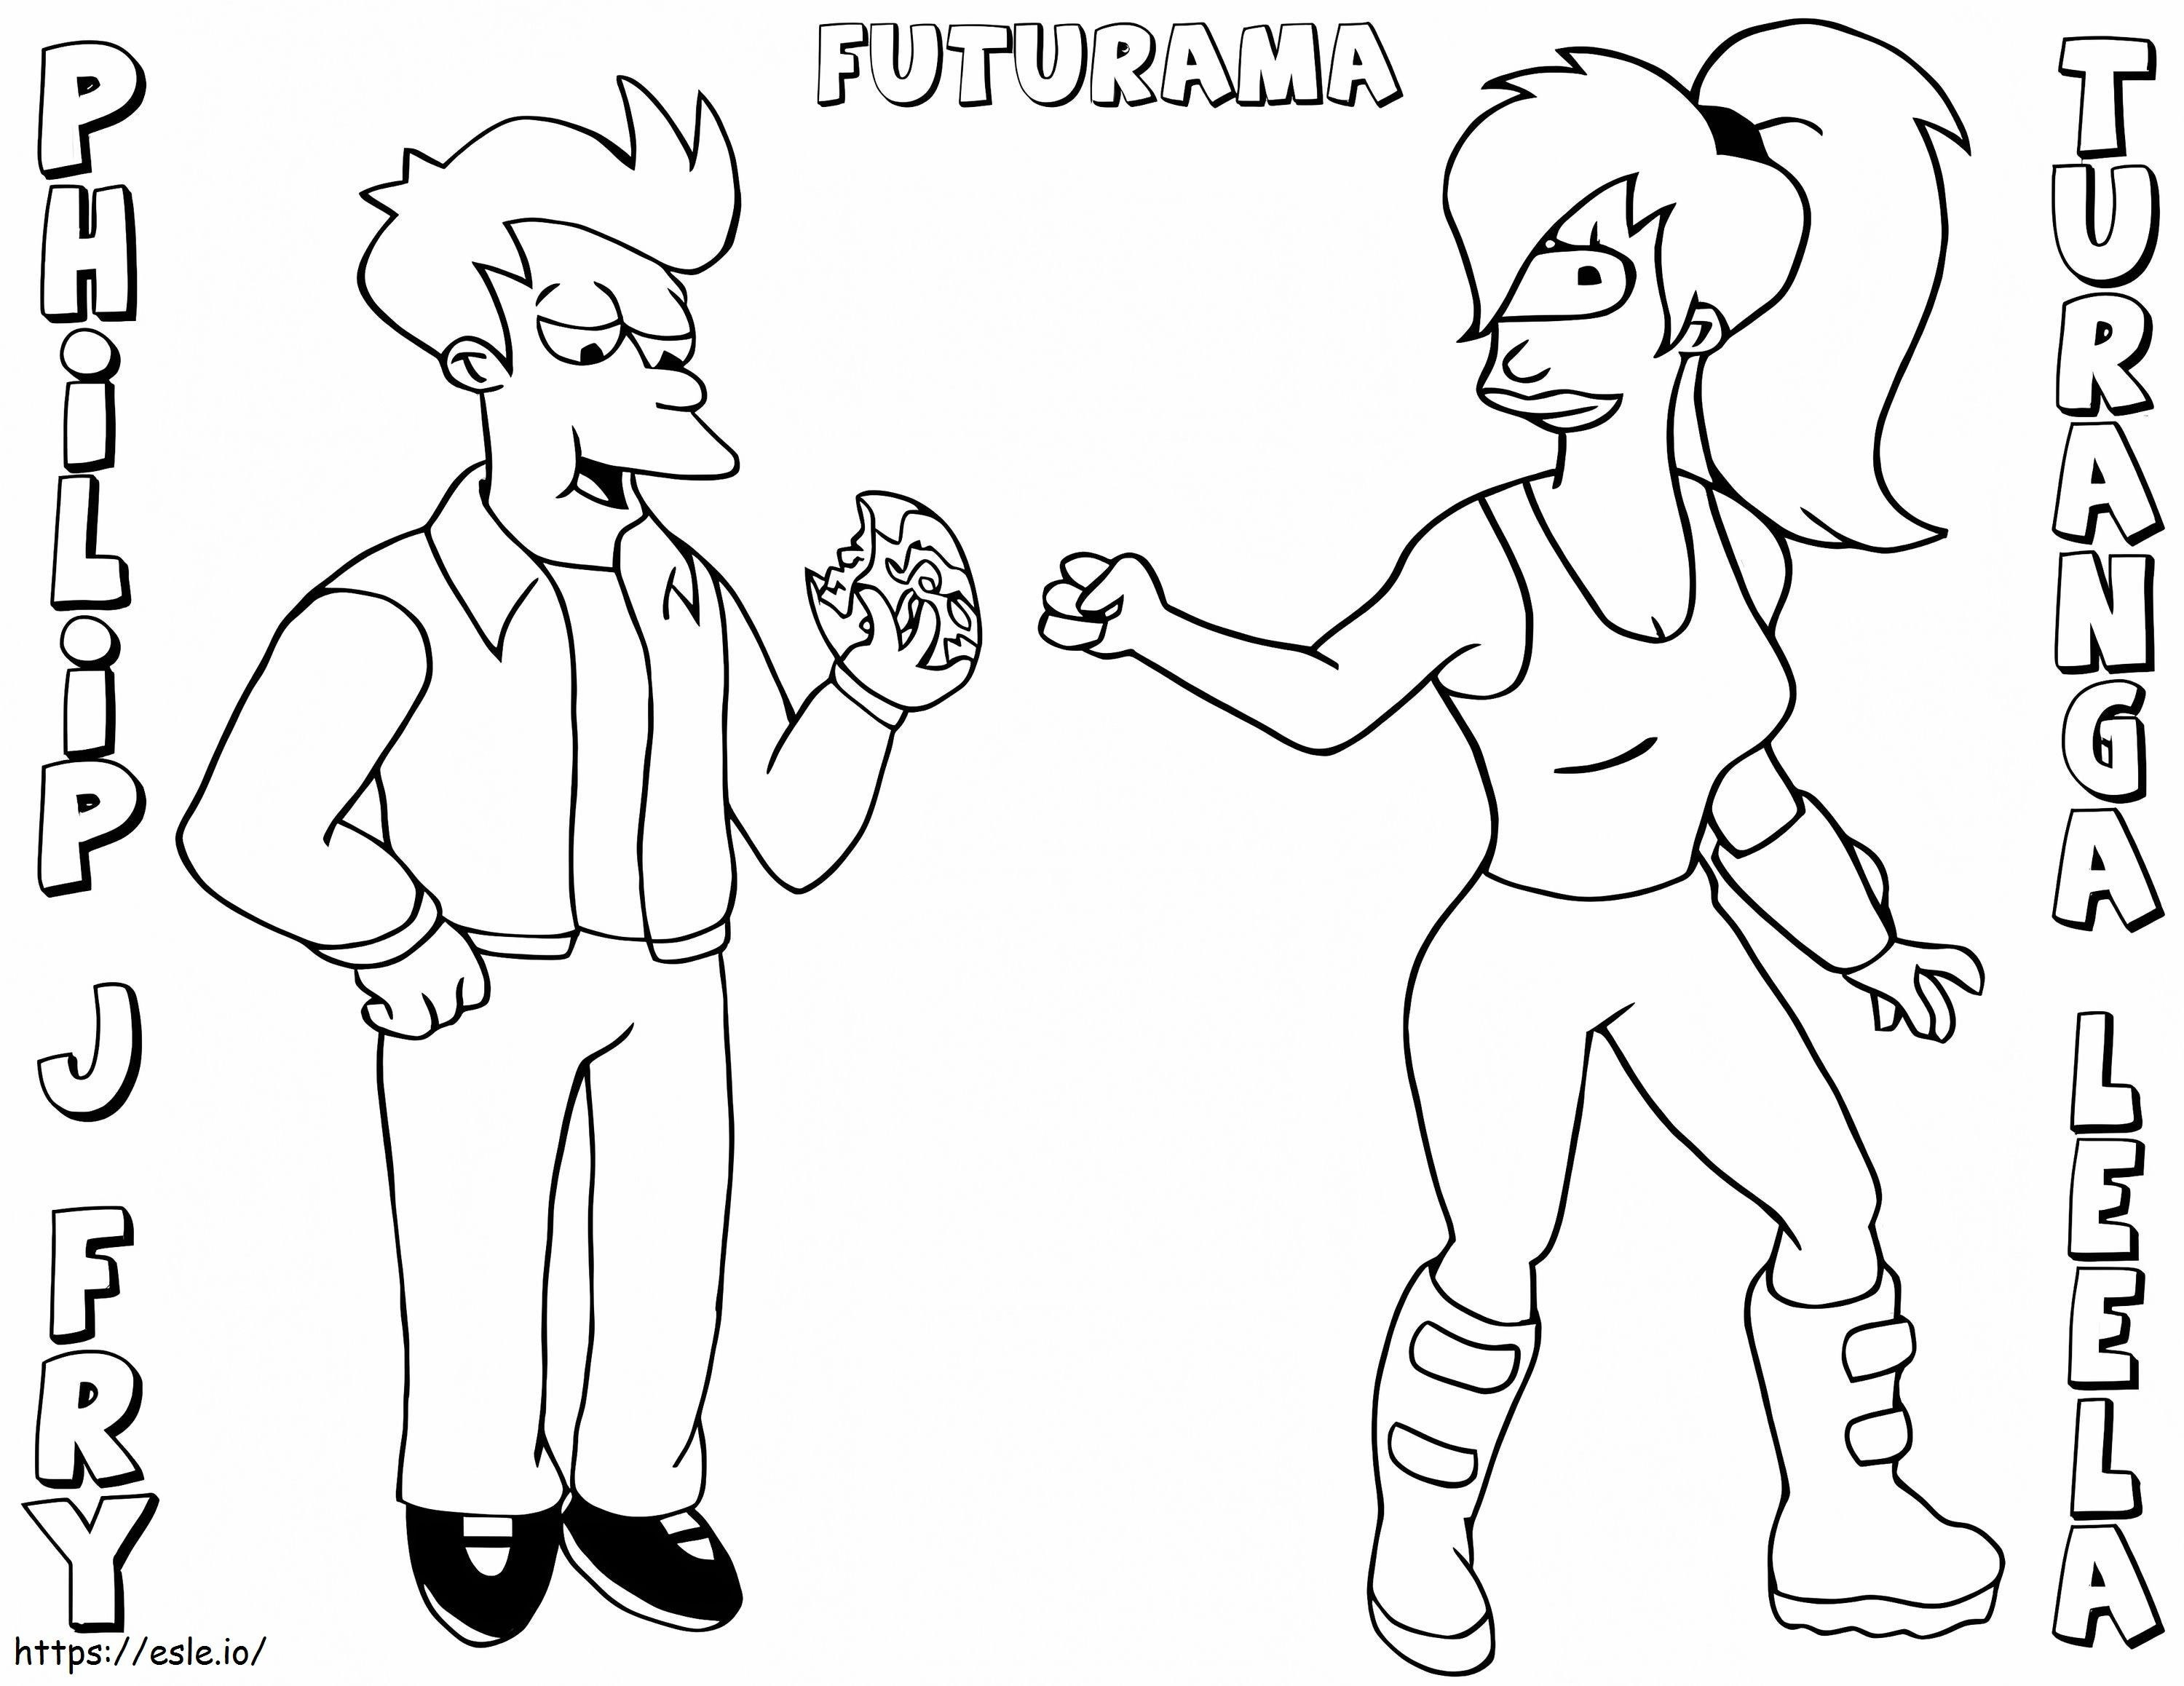 Fry e Leela di Futurama da colorare